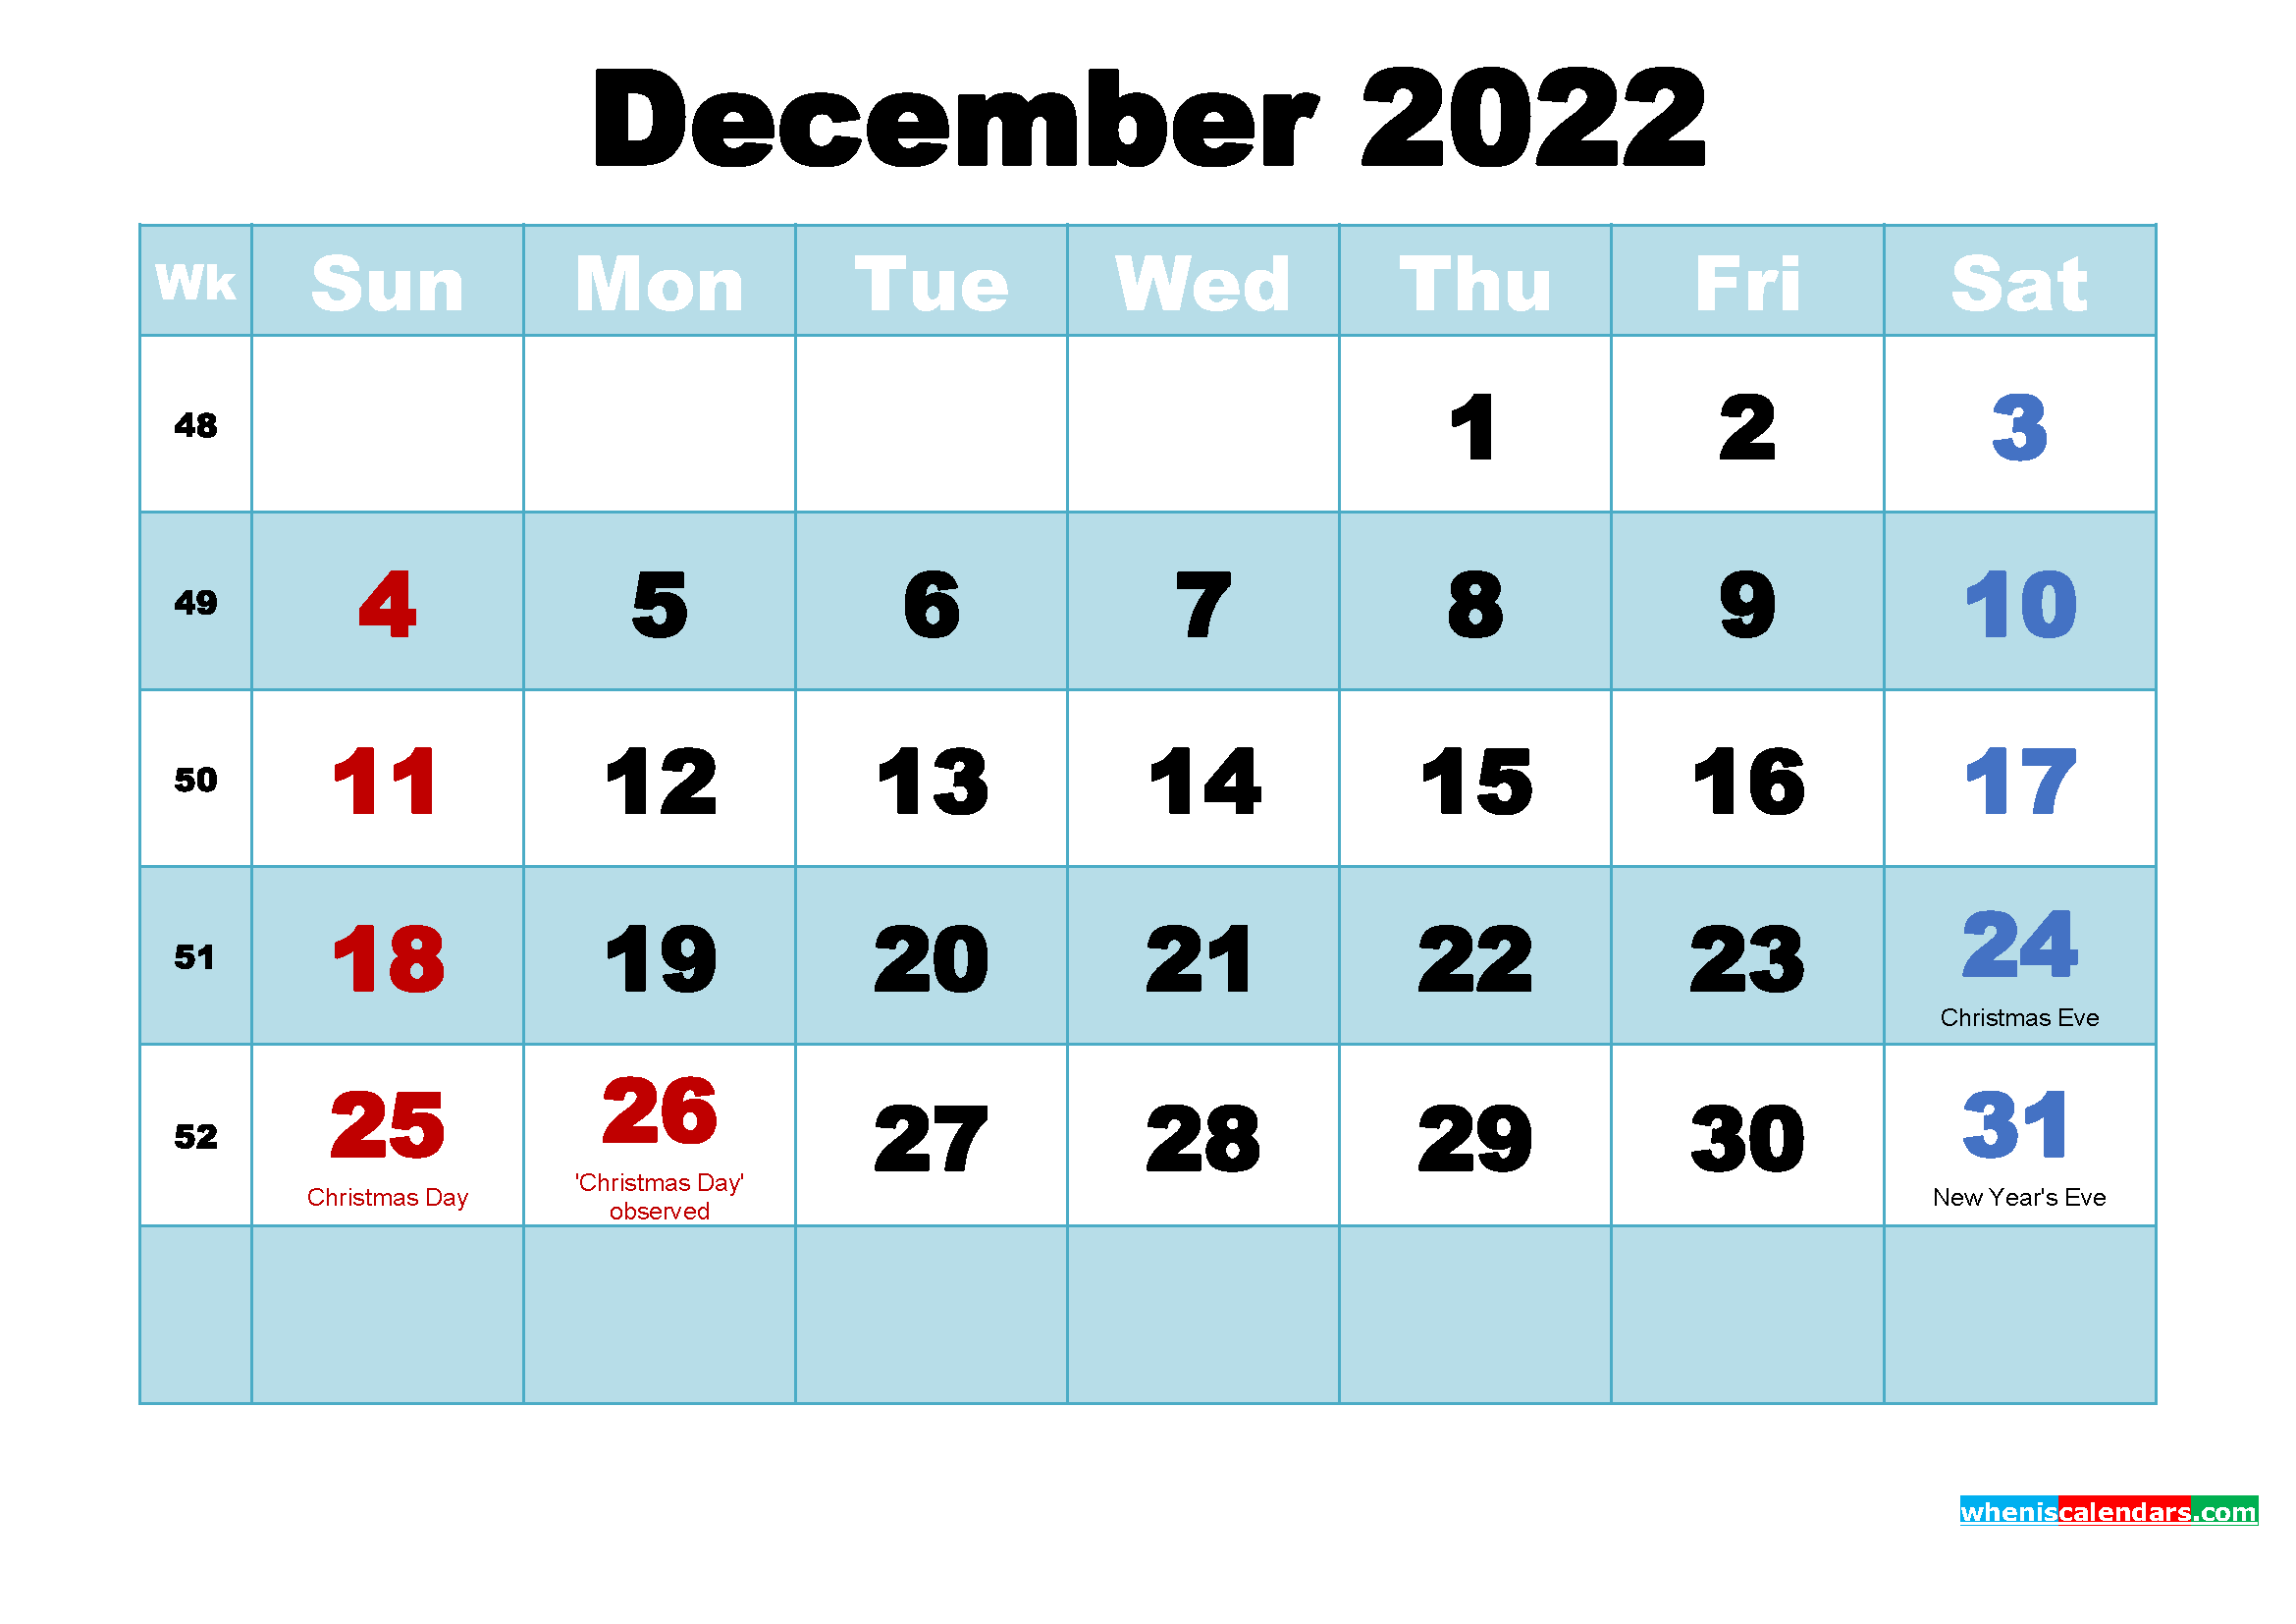 December 2022 Calendar Wallpaper High Resolution